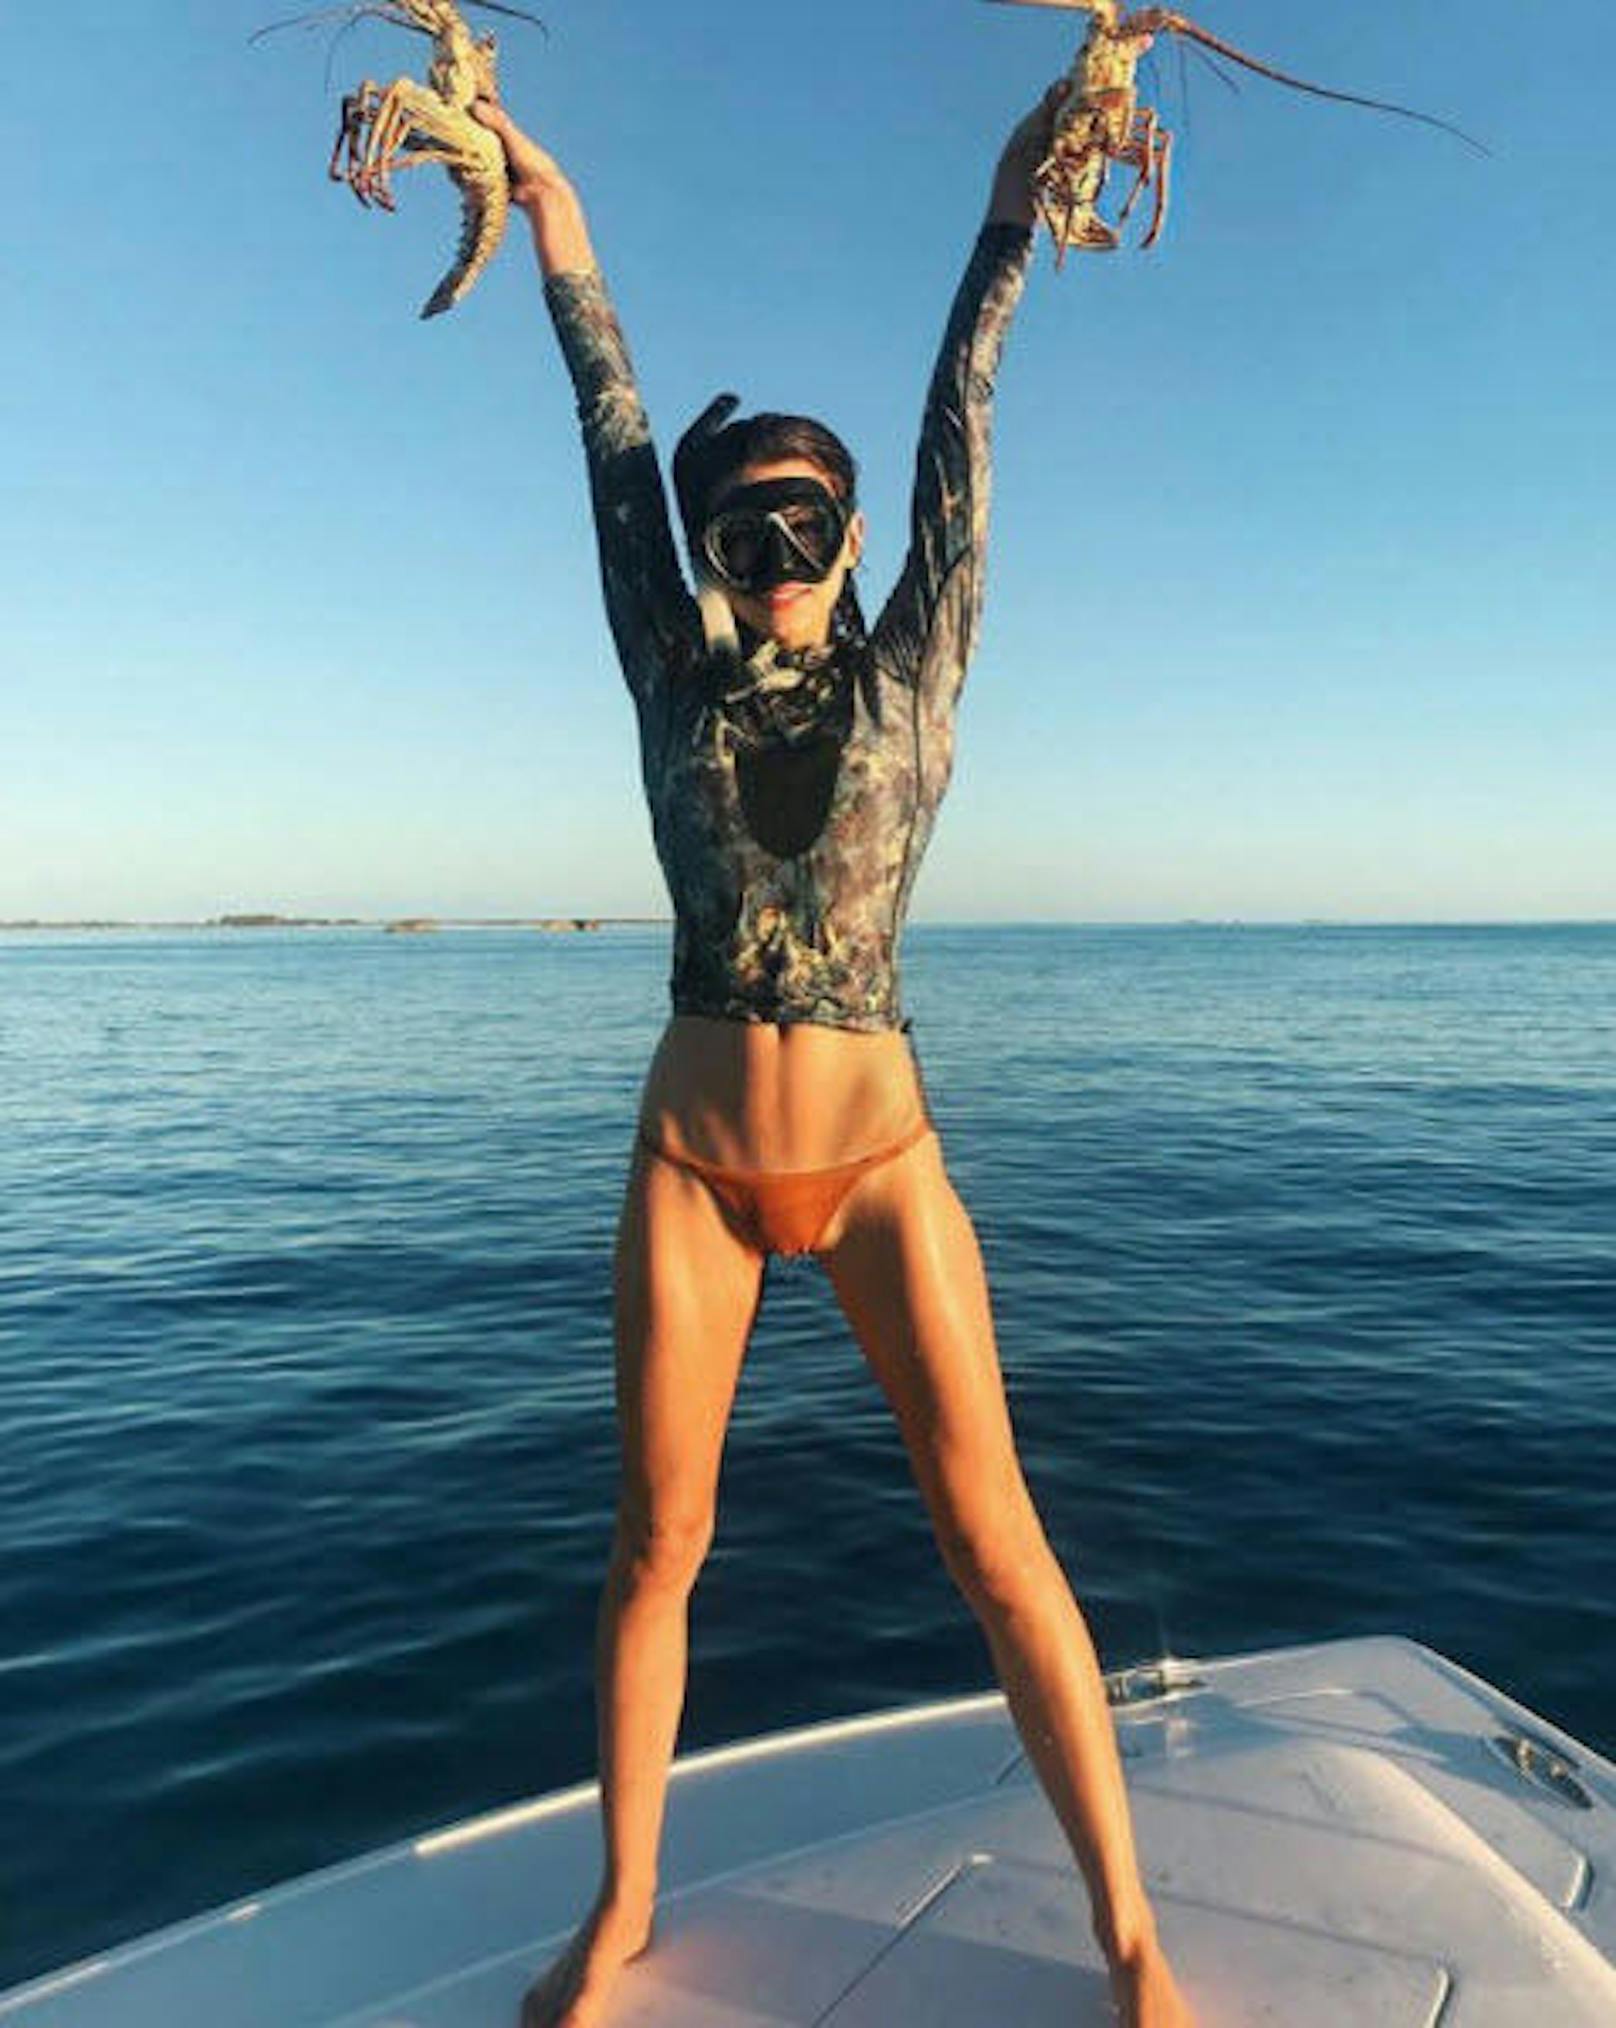 19.02.2018: Georgia Fowler verbrachte ein Wochenende mit drei Model-Freundinnen (u.a. Sara Sampaio) auf den Bahamas. Auf Instagram präsentiert sie ihren stolzen Schnorchel-Fang und ein knappes Bikini-Unterteil.